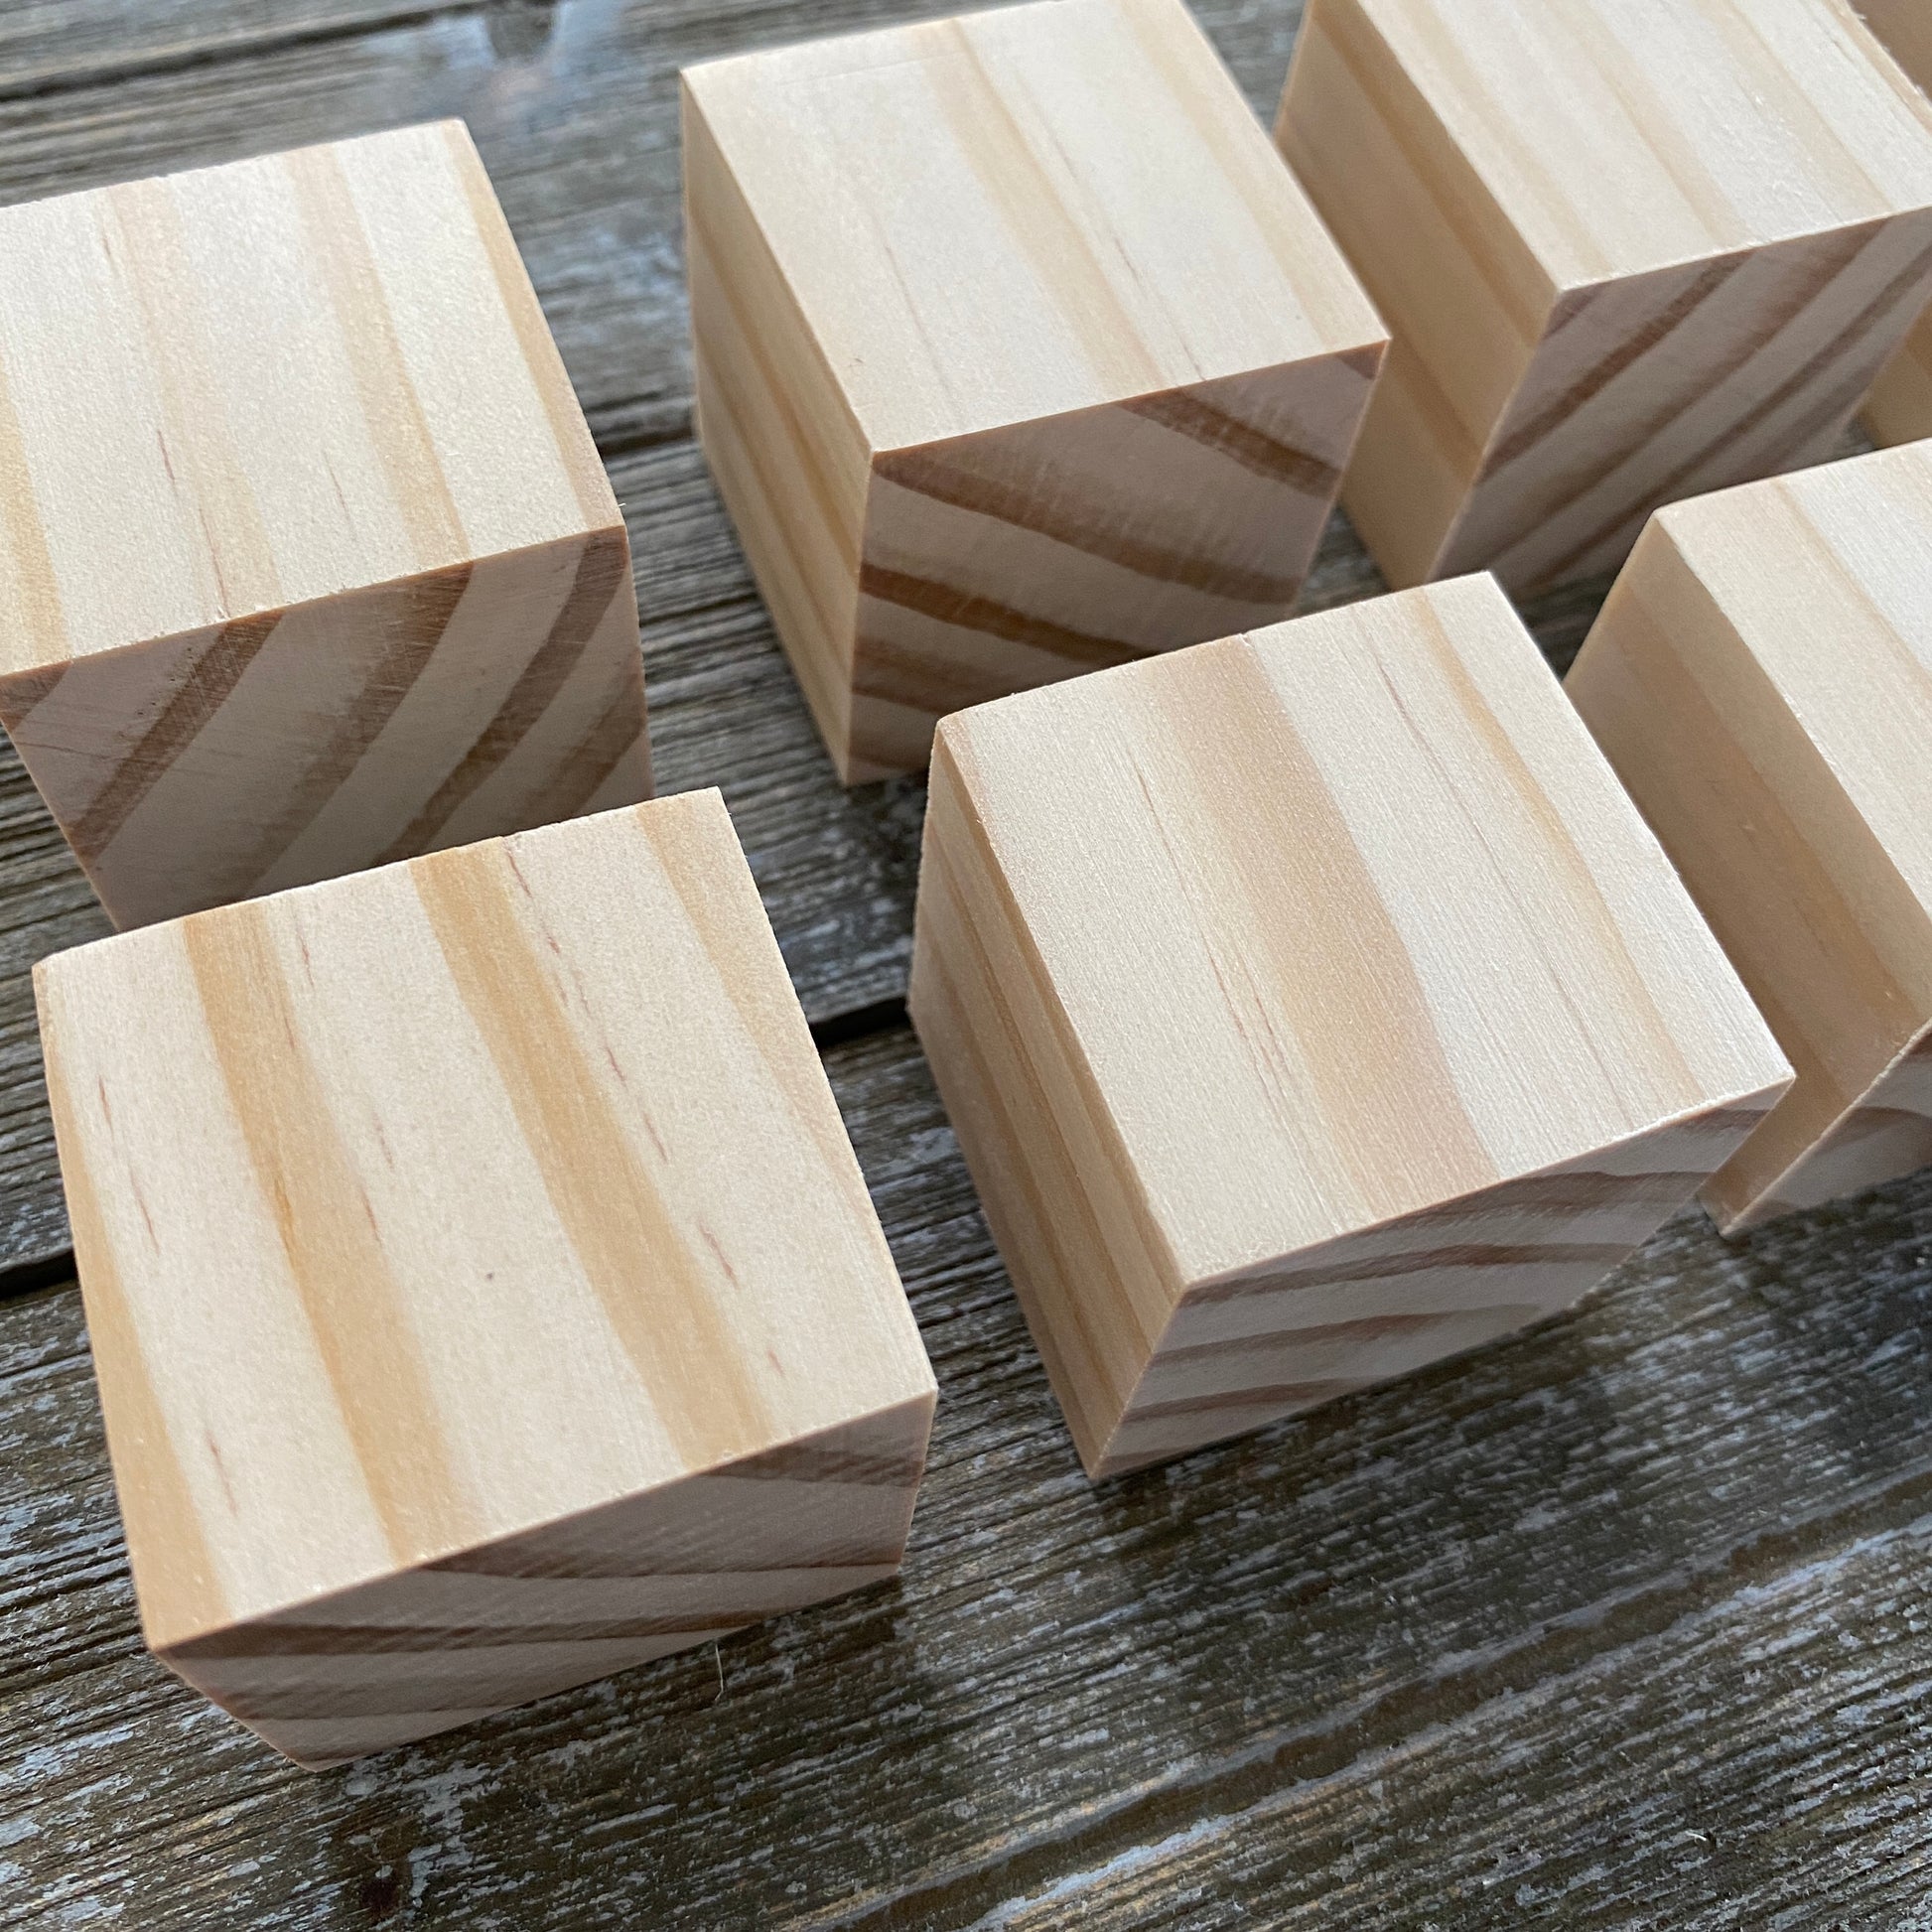 Unfinished Wood Blocks for Crafts - 8 pc set – BKV Decor